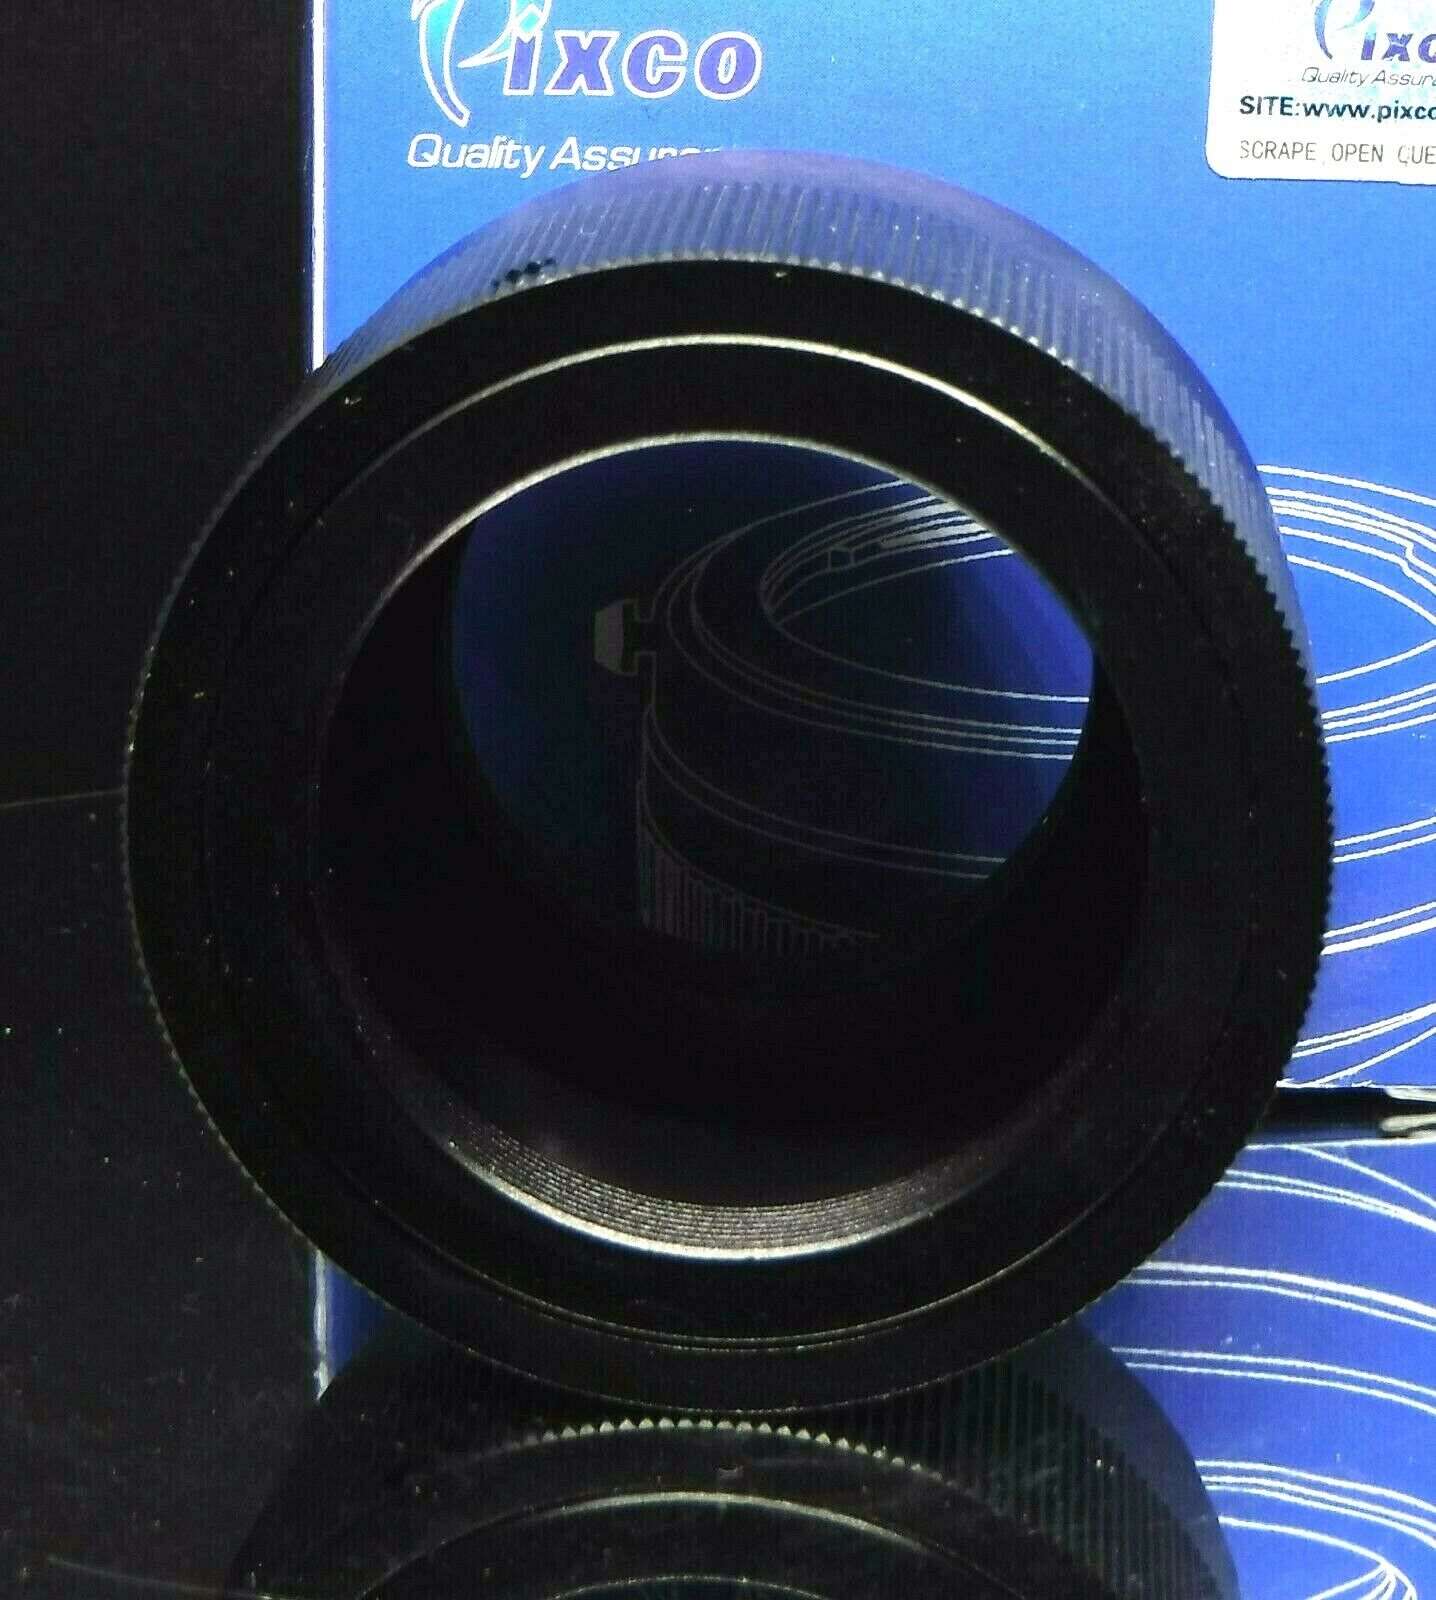 Camera Lens Adaptor Mount T-2 - Micro Four Thirds Panasonic, OM-D, E-M1, E-M5